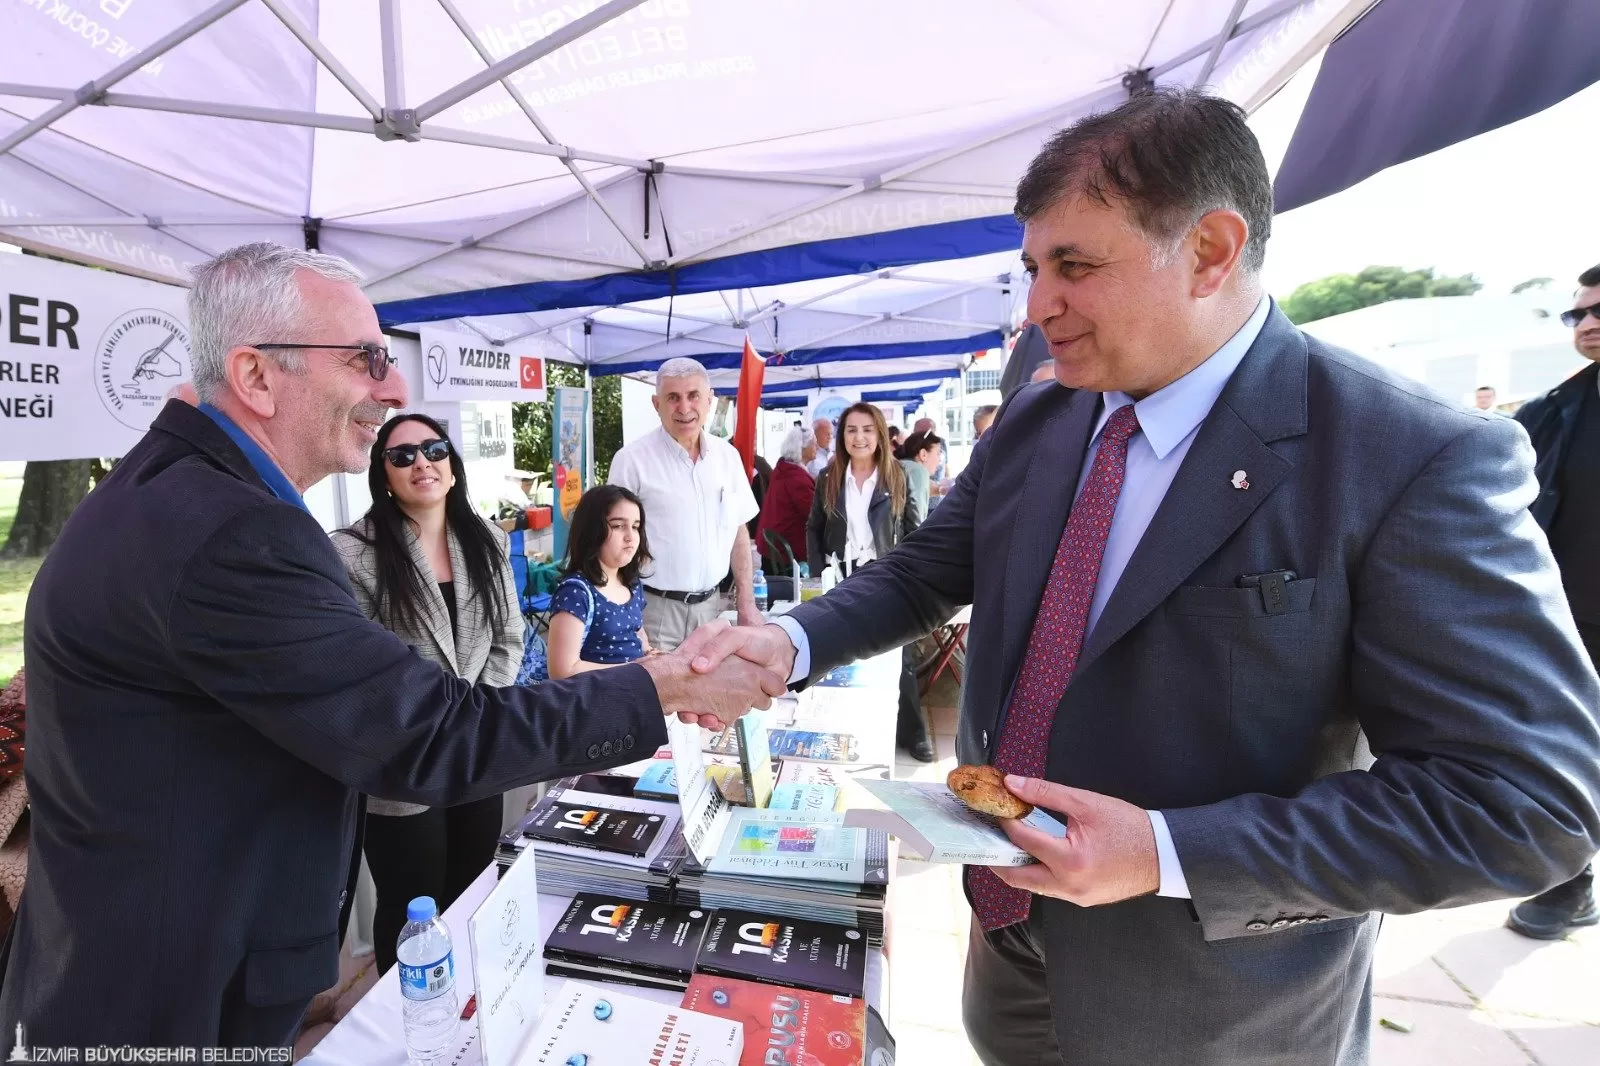 İzmir Büyükşehir Belediyesi'nin ev sahipliğinde İZFAŞ ve SNS Fuarcılık işbirliği ile düzenlenen İzkitapfest - İzmir Kitap Fuarı 19 Nisan'da Kültürpark'ta açıldı. 